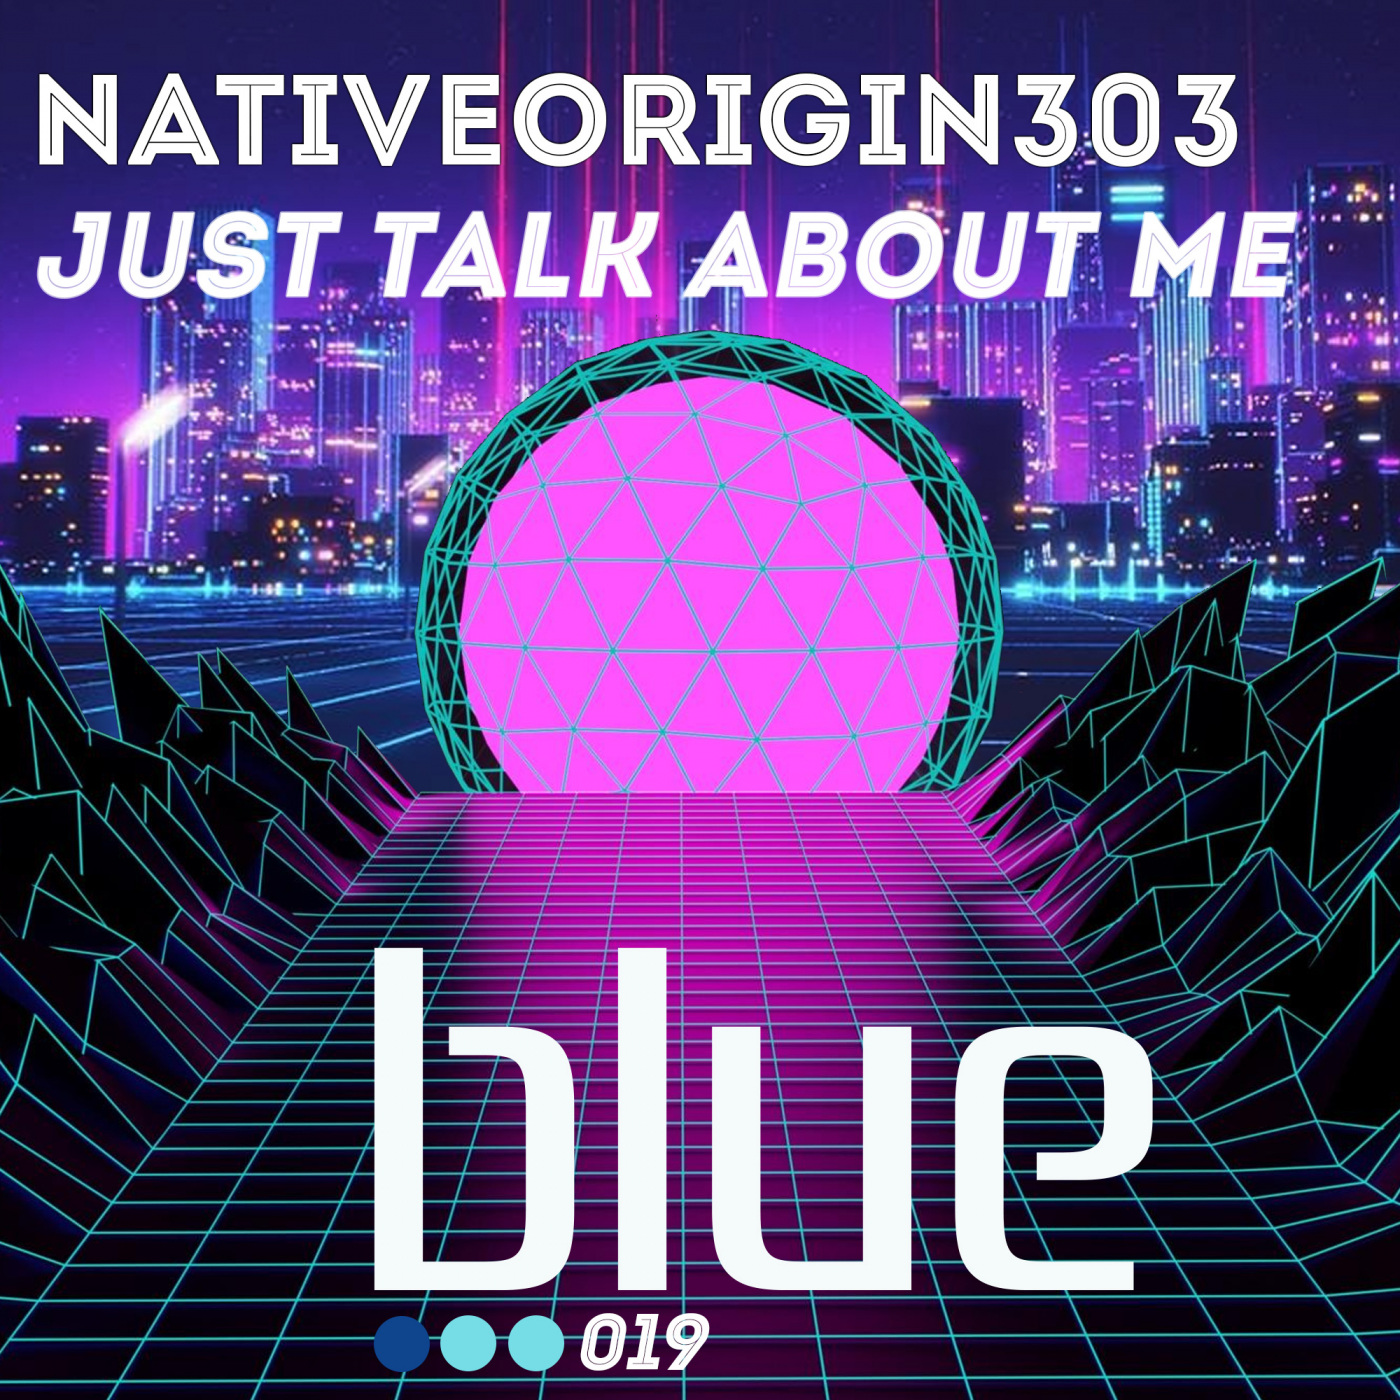 NativeOrigin303 - Just Talk About Me / NativeOrigin303